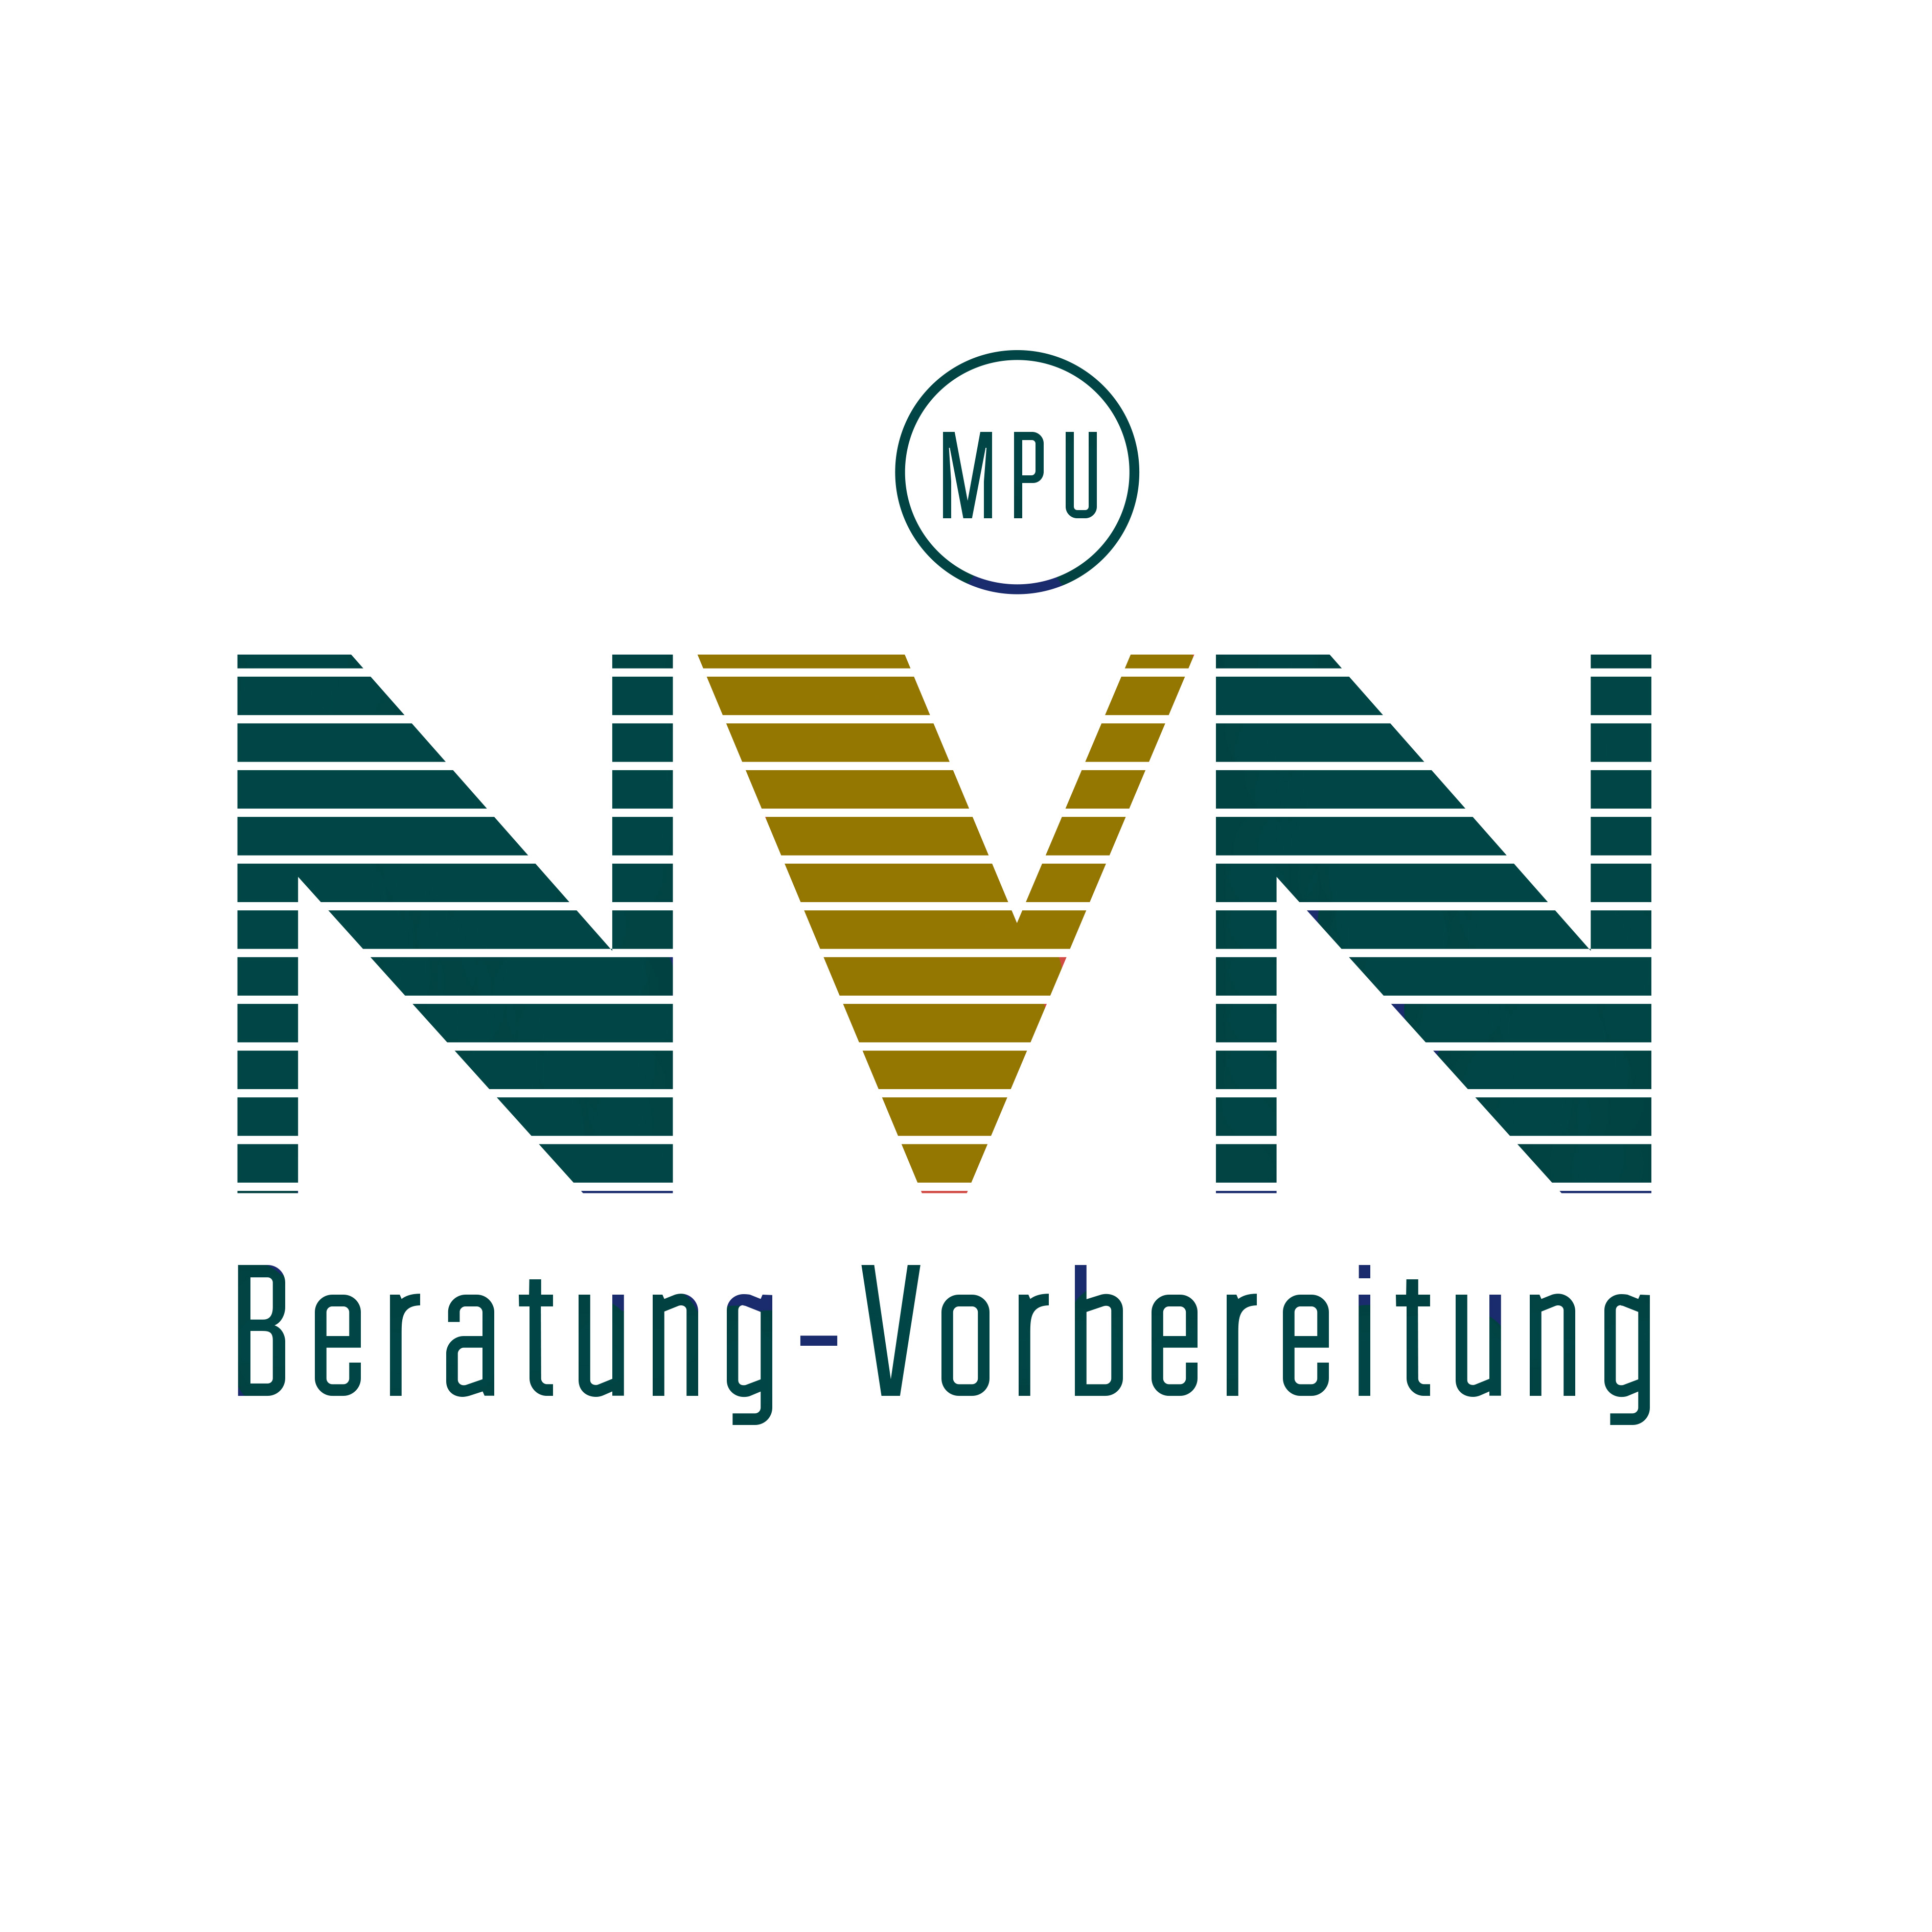 NVN MPU-Beratung